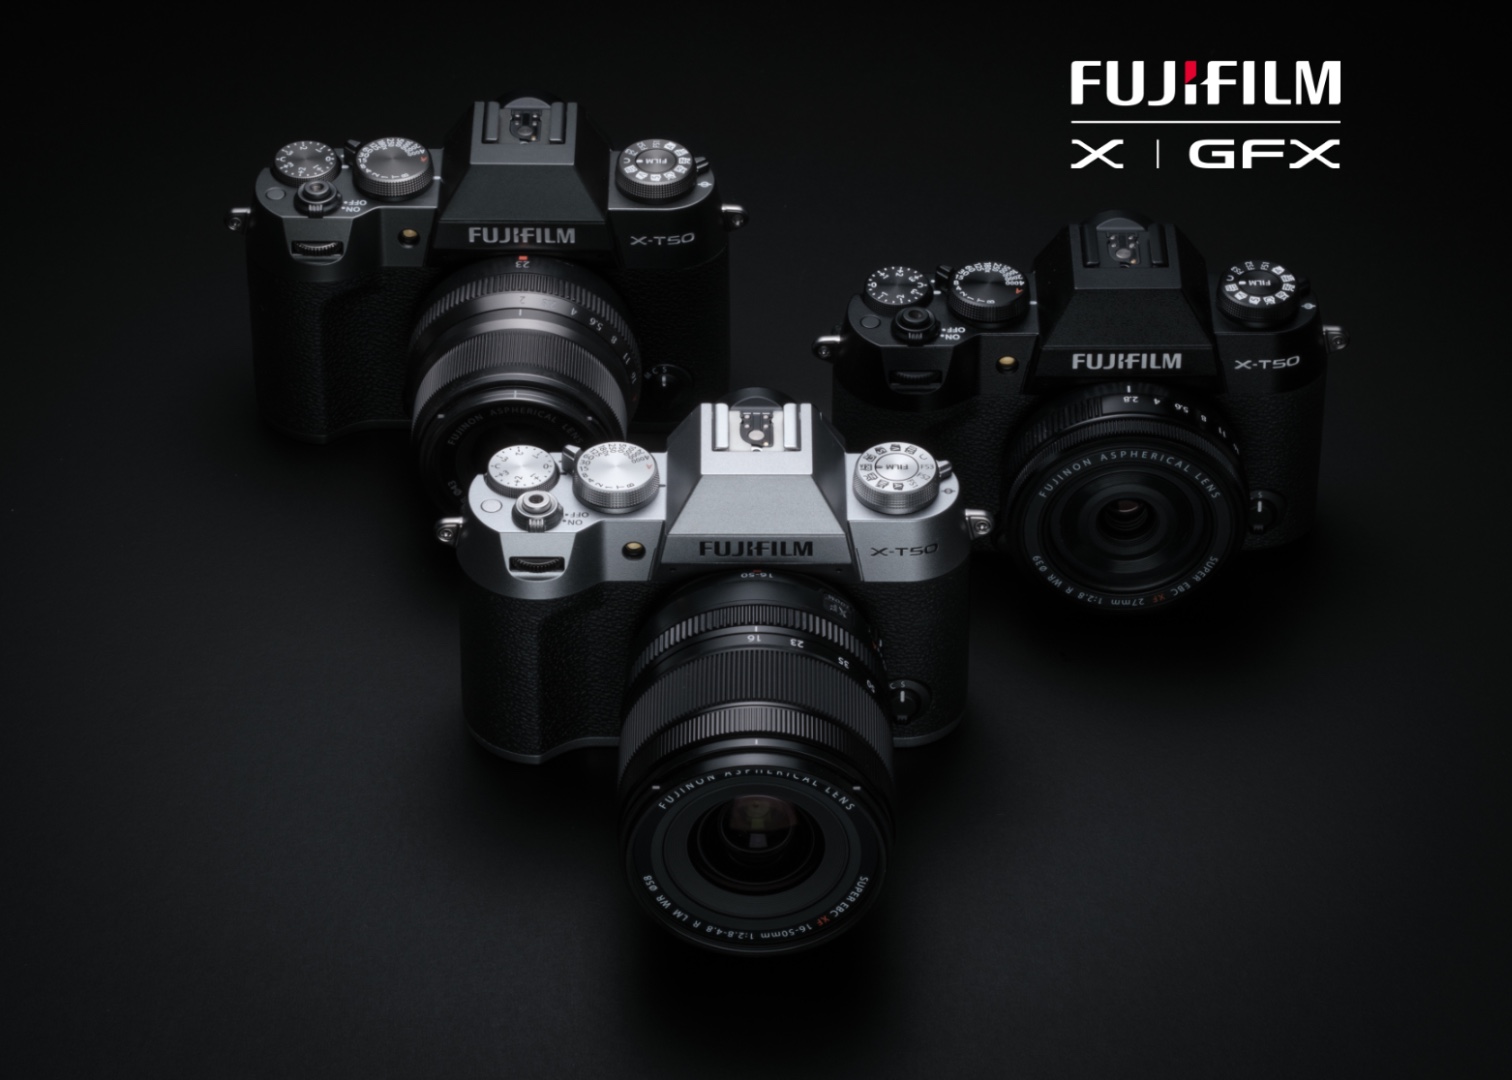 Le nouveau Fujifilm X-T50